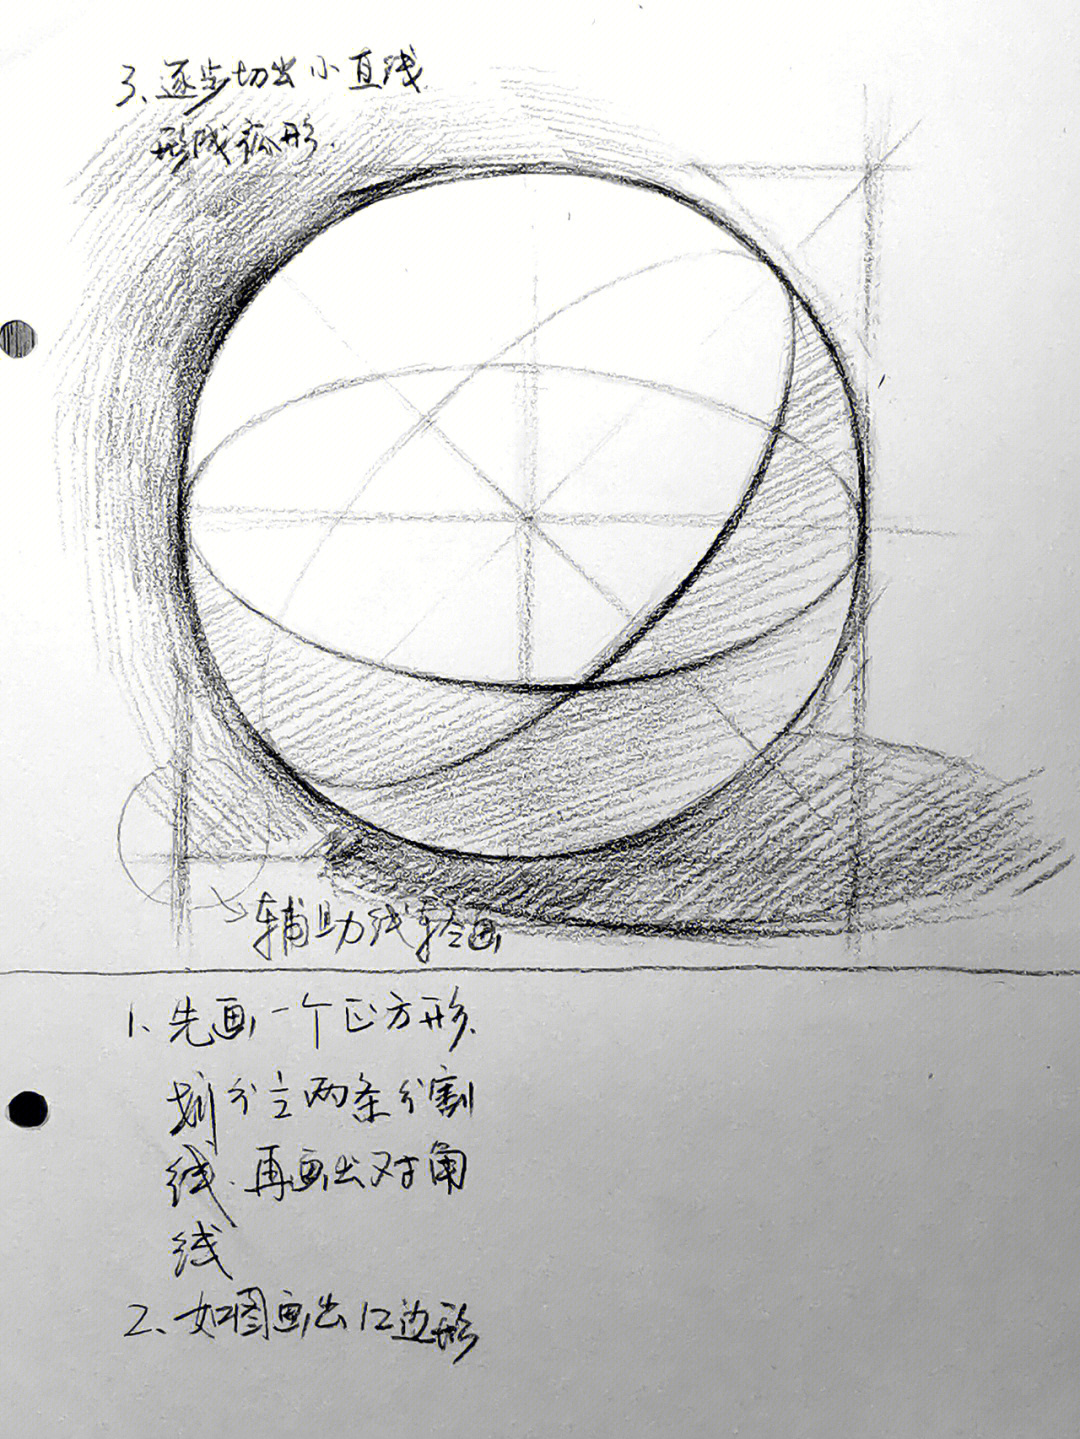 素描画圆球教程画法图片